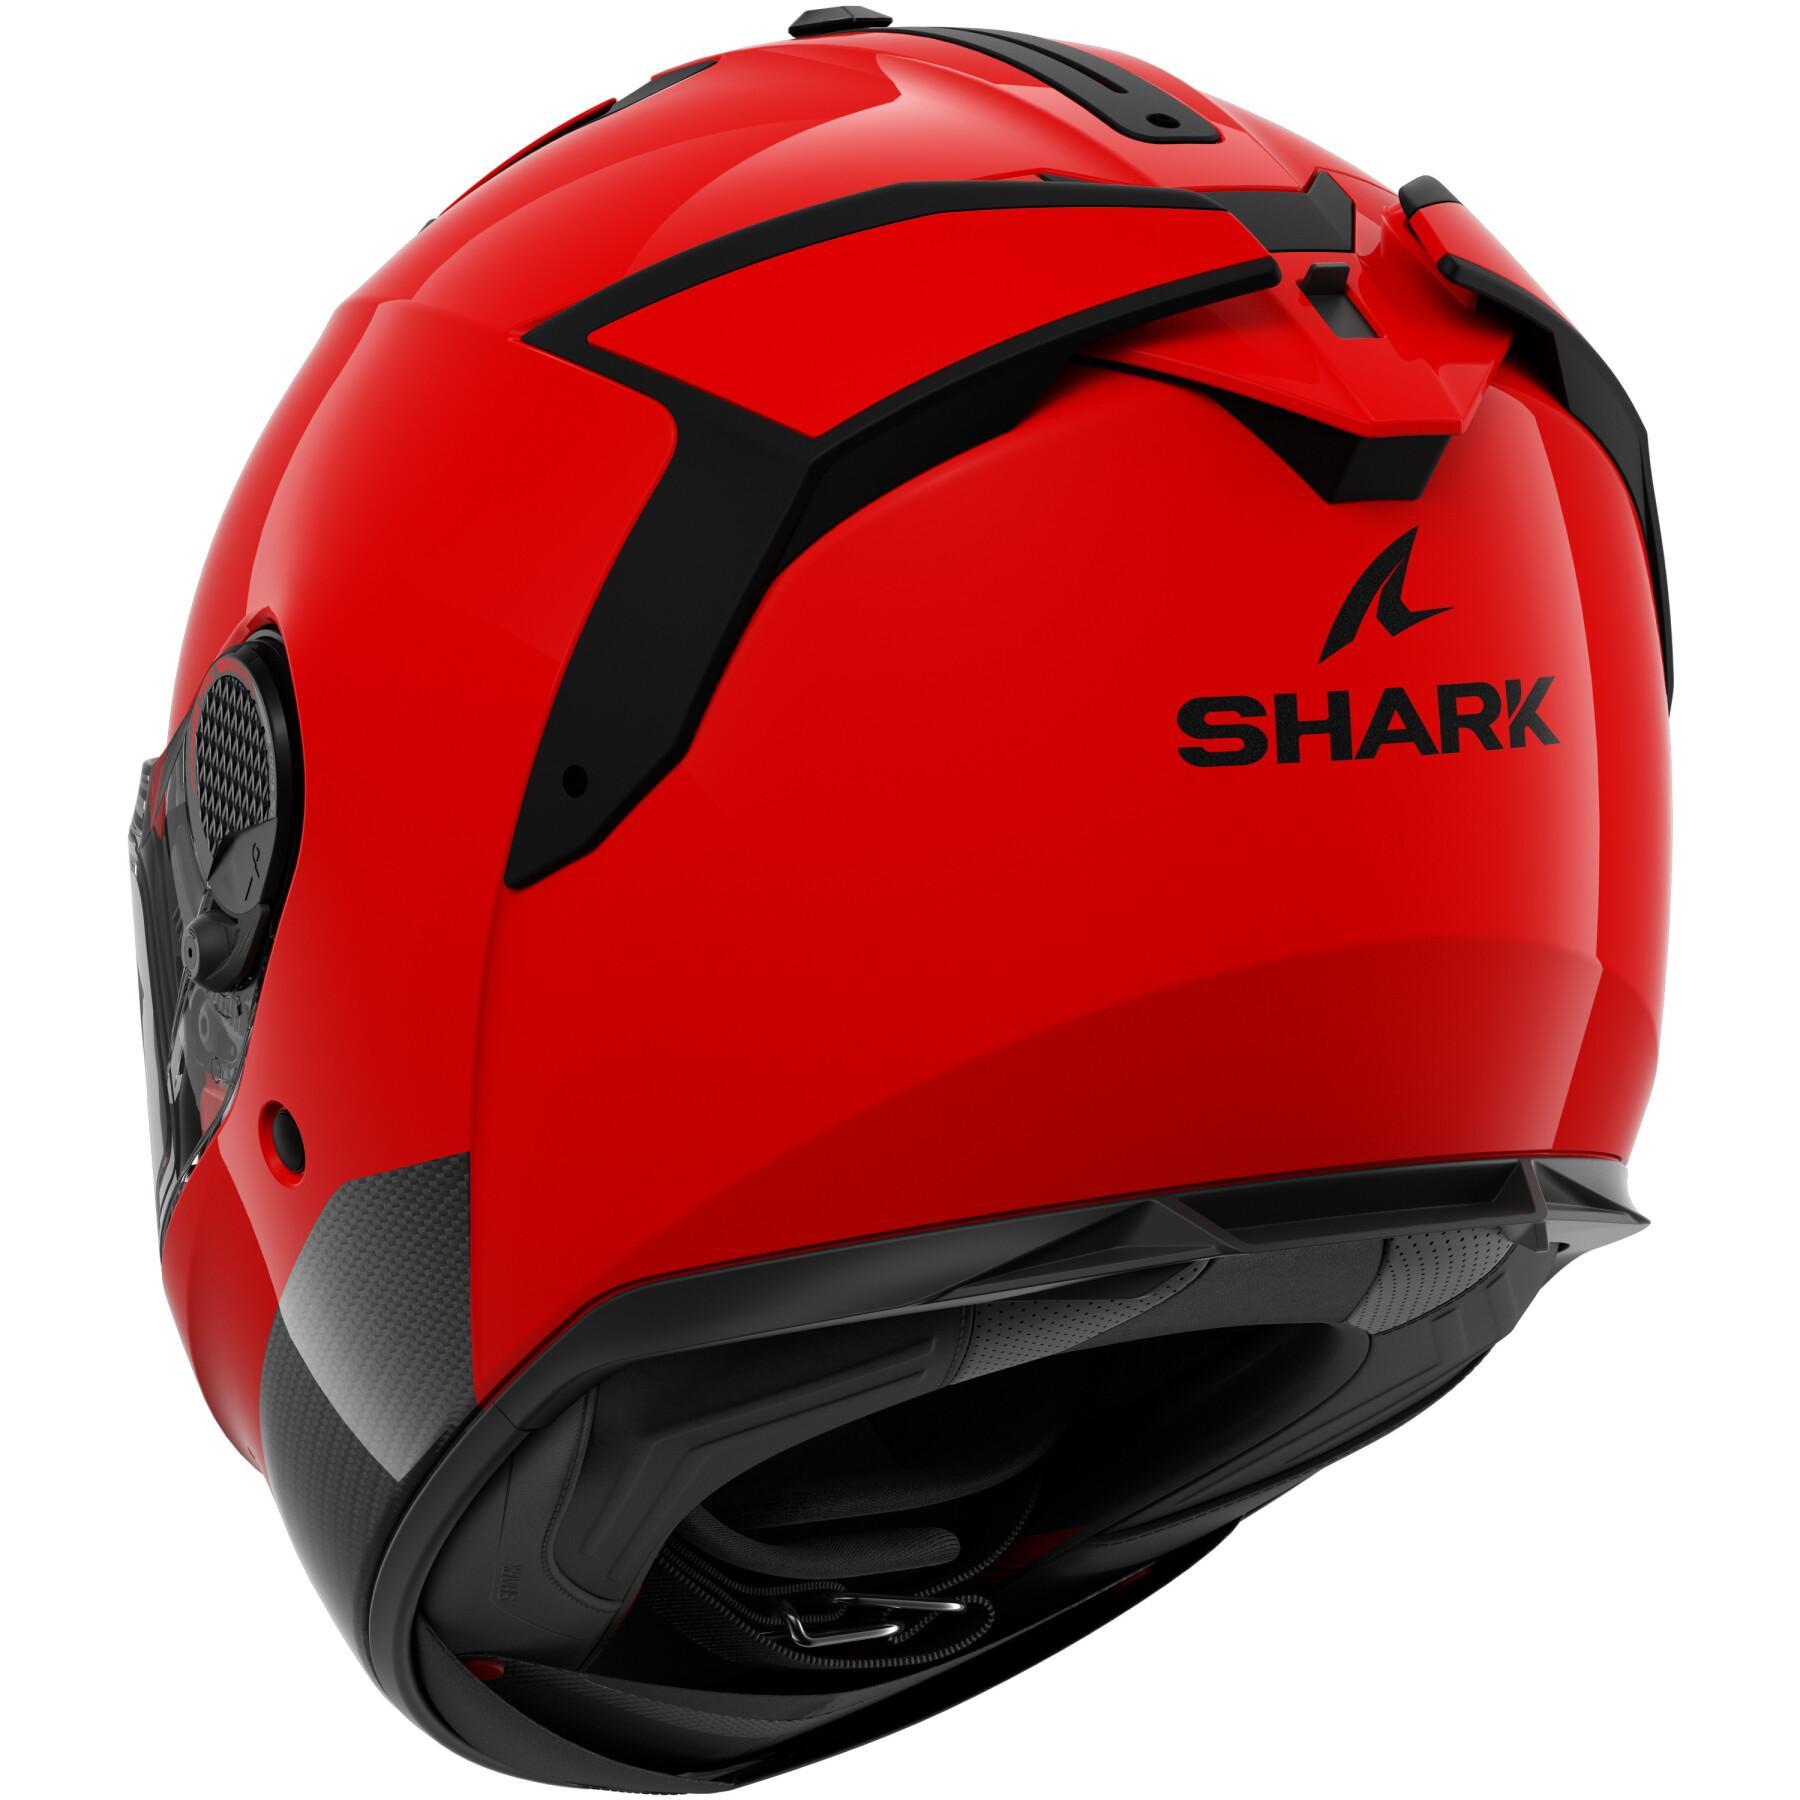 Full face motorcycle helmet Shark Spartan Gt Pro